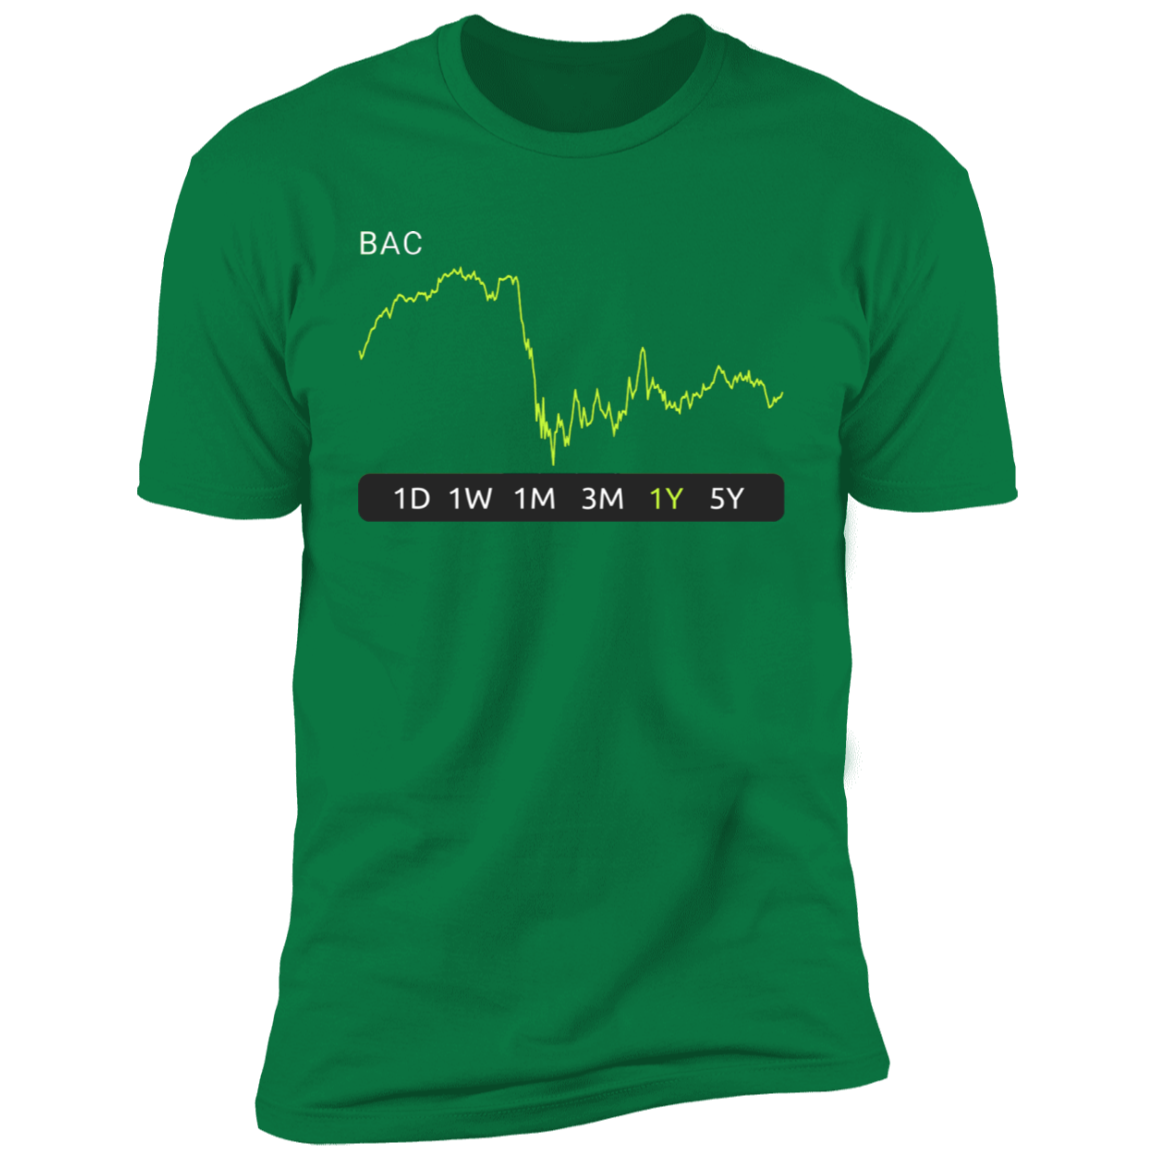 BAC Stock 1y Premium T-Shirt